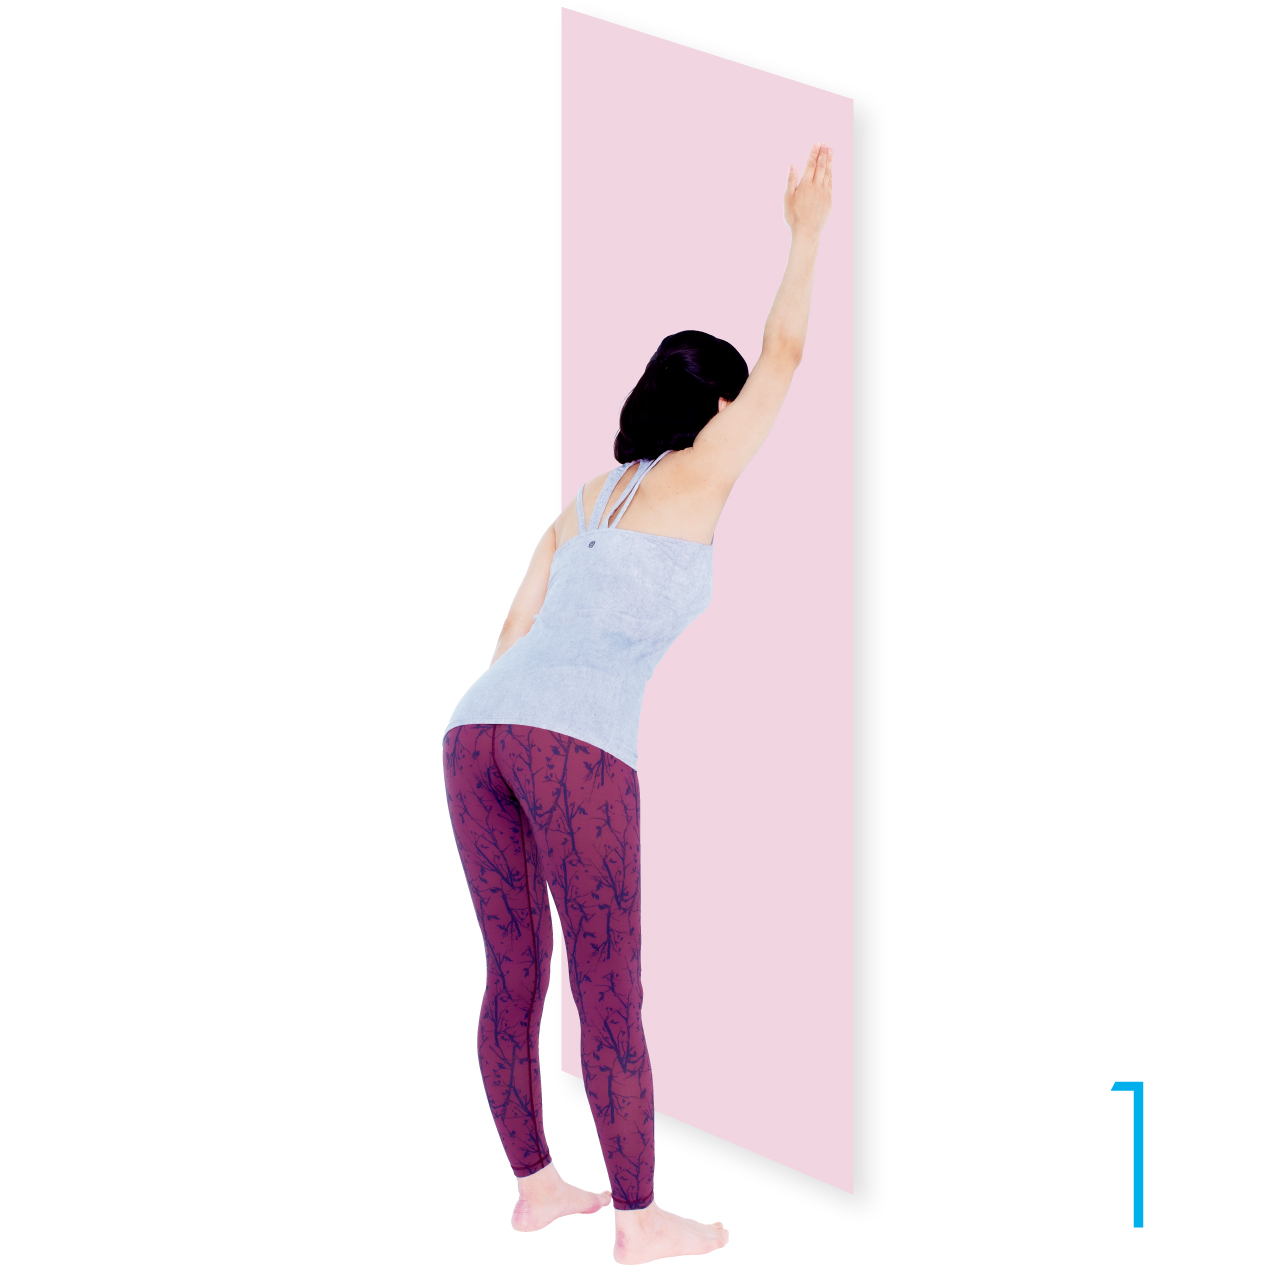 壁から１歩離れて立ち、右手を高い位置に置いて、手の小指側の側面を壁につけます（空手チョップのように）。そのまま、お尻を突き出します